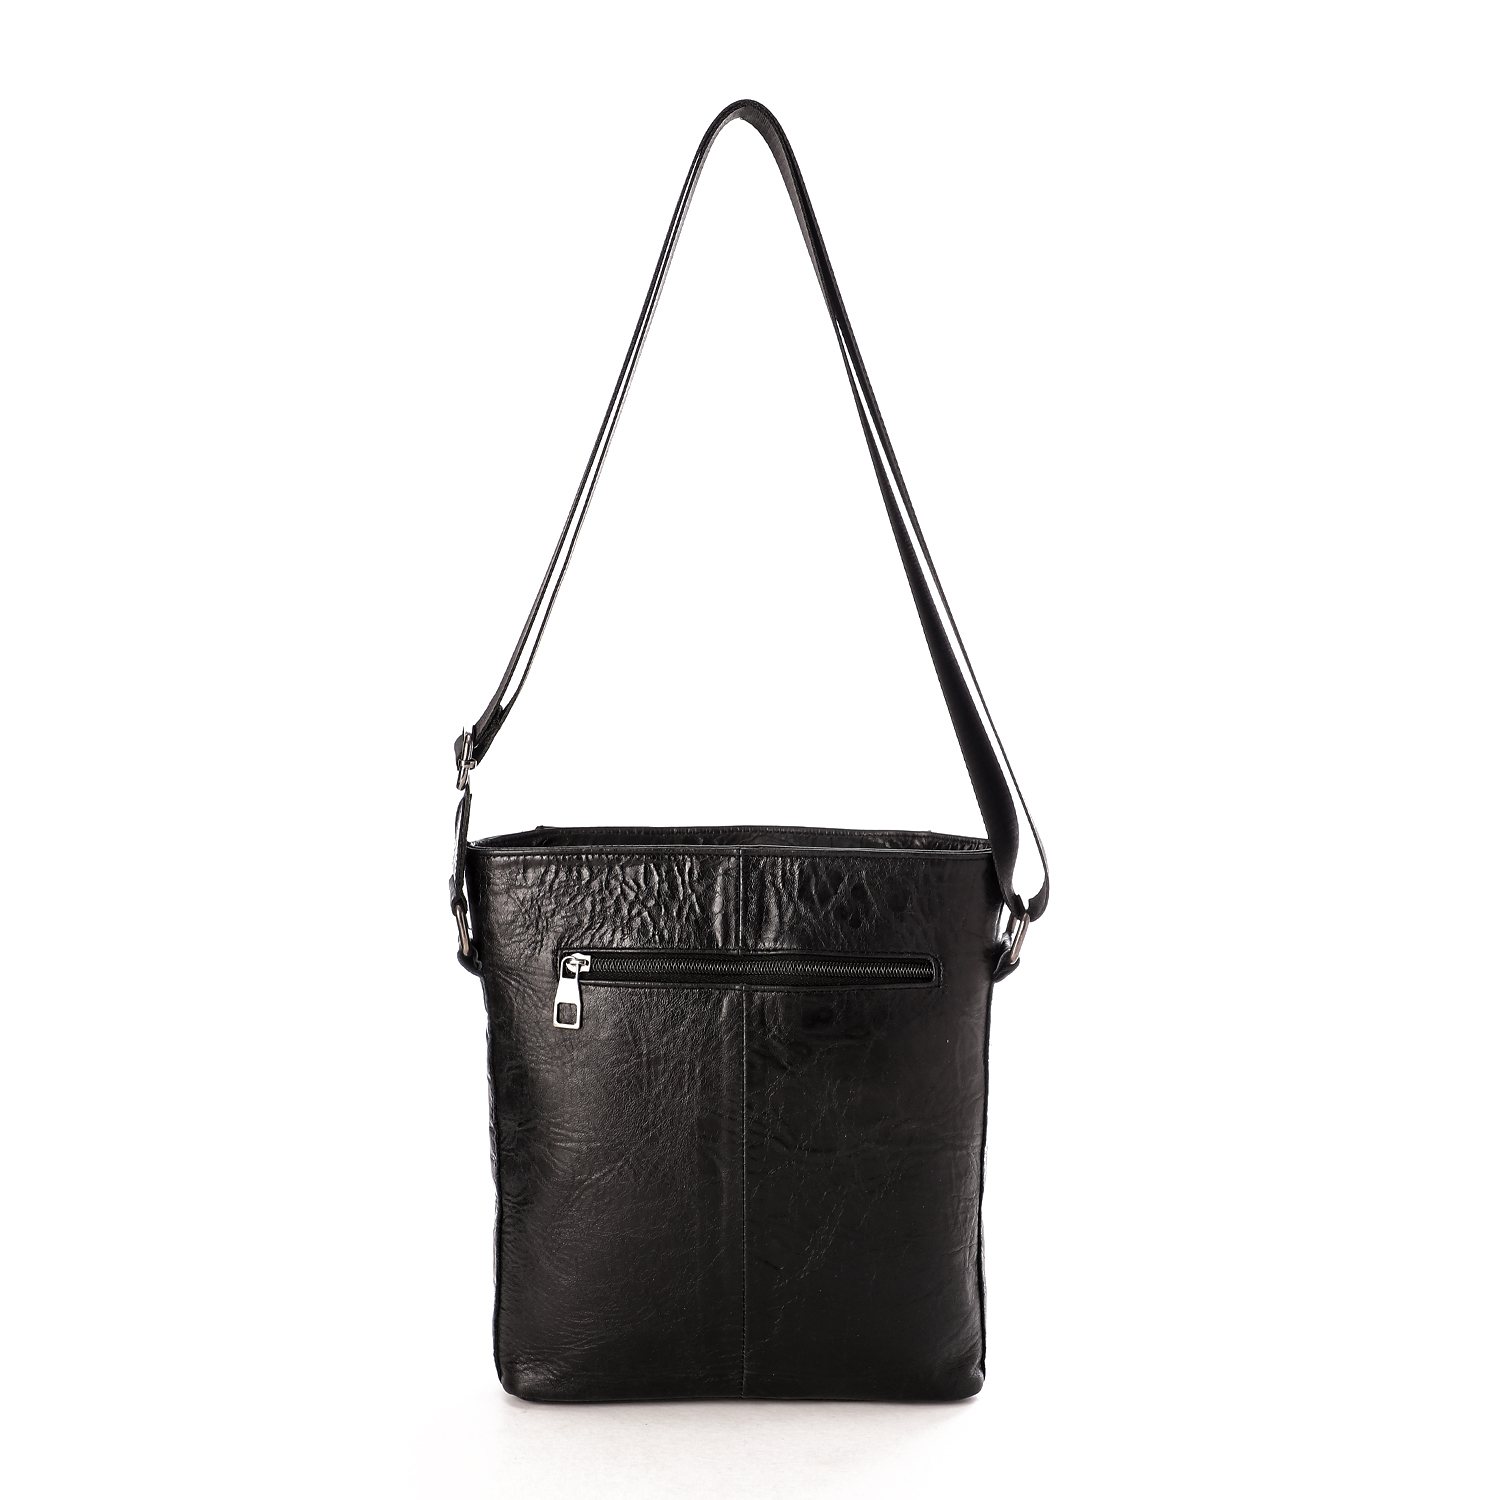 حقيبة كروس من أم أند أو جلد طبيعي ذات مقبض قابل للتعديل للرجال - اسود